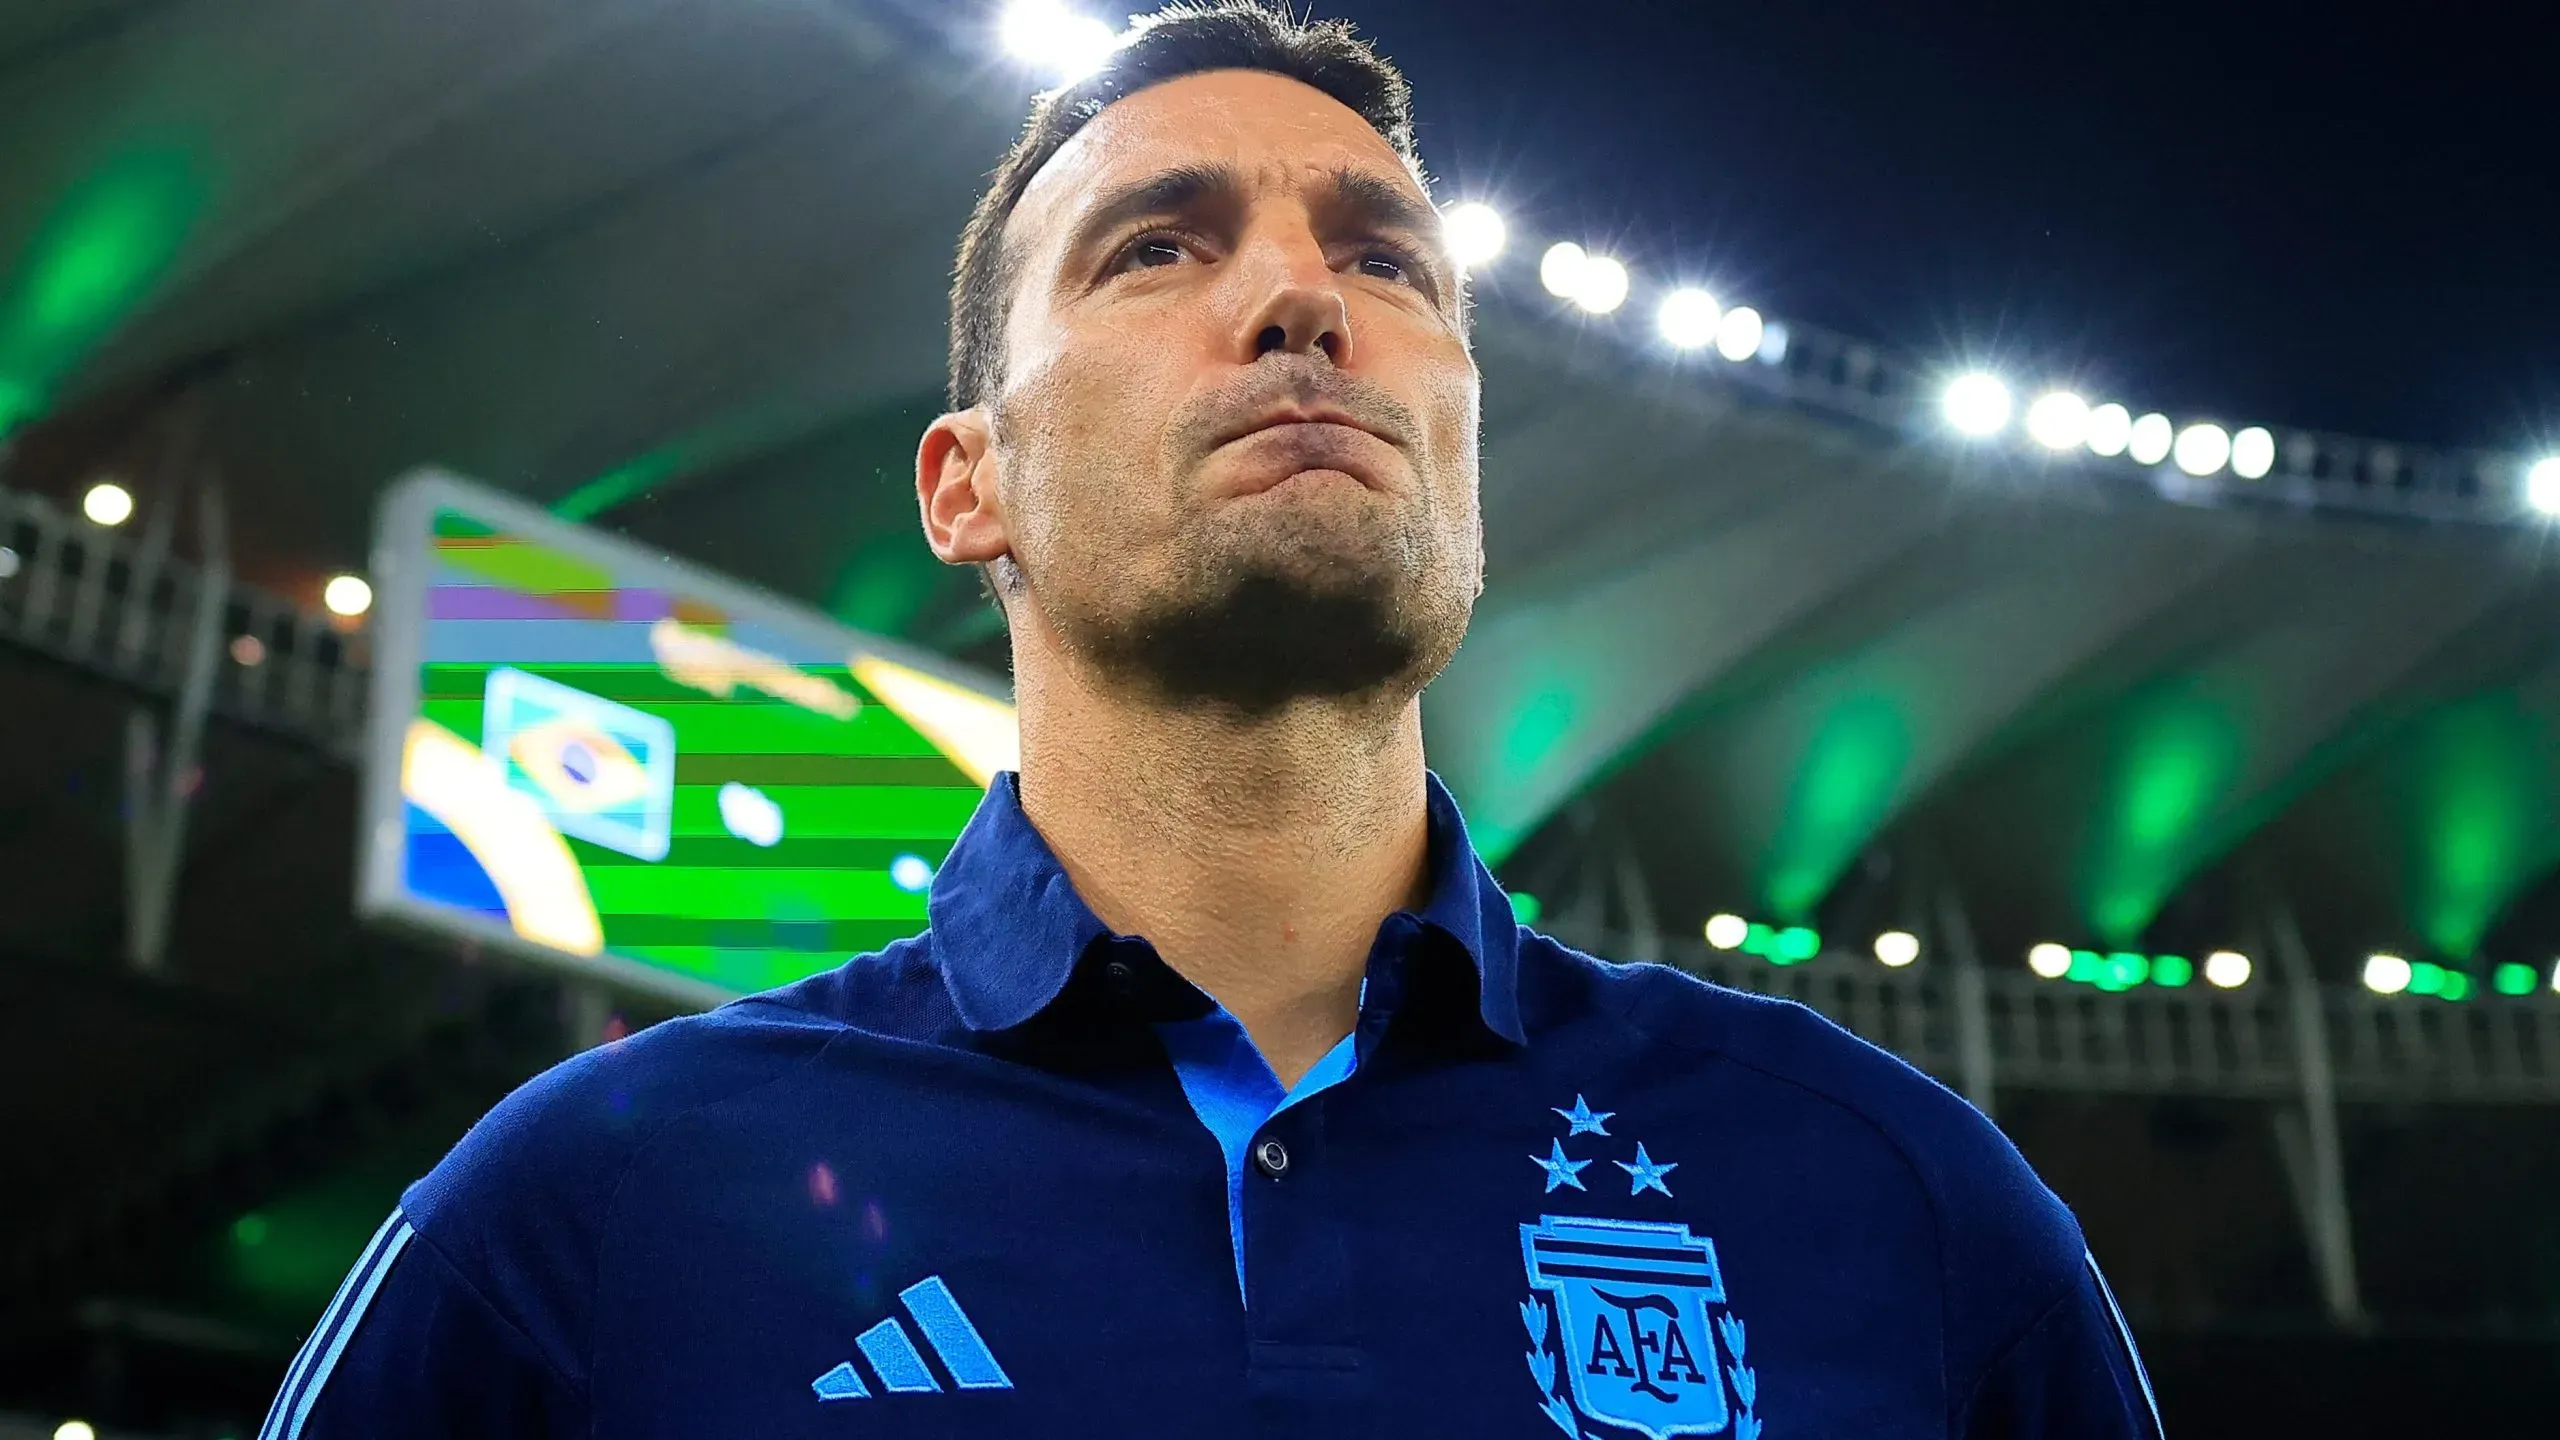 Lionel Scaloni en los momentos previos a anunciar sus dudas de continuar siendo el DT de la Selección Argentina. Getty Images.